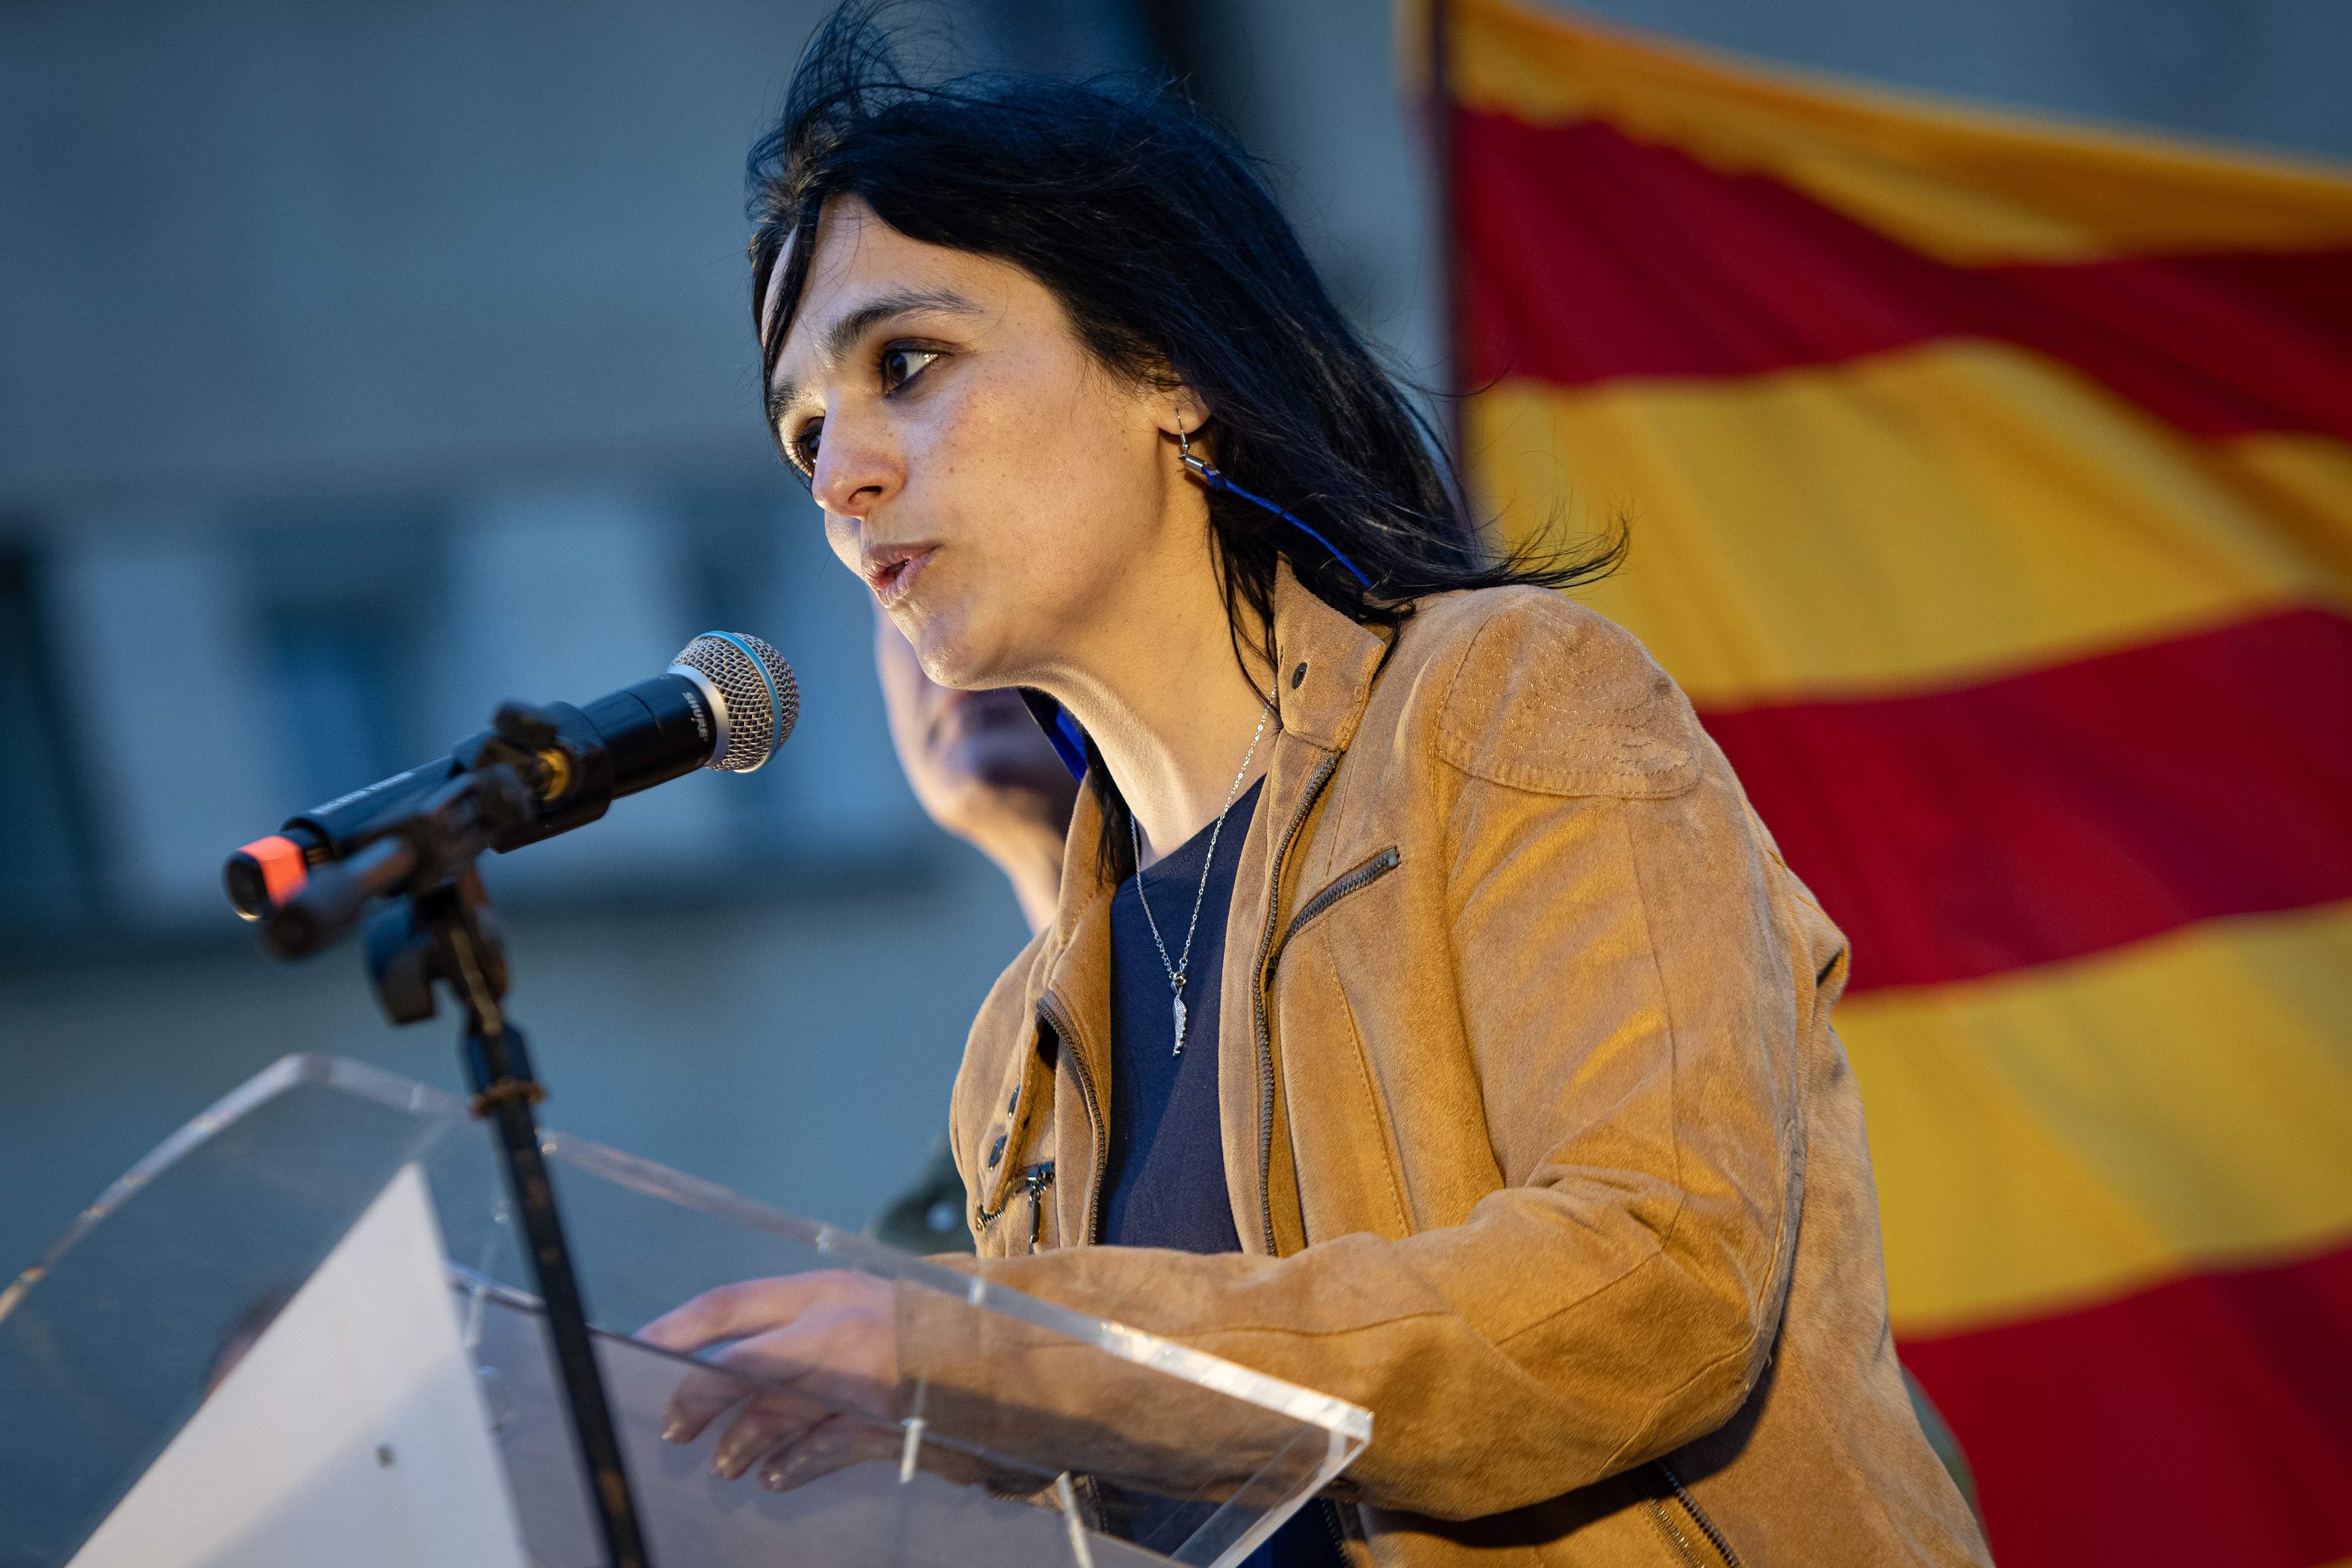 Aliança Catalana, i ara què? Preguntes i respostes després de la irrupció de Sílvia Orriols al Parlament